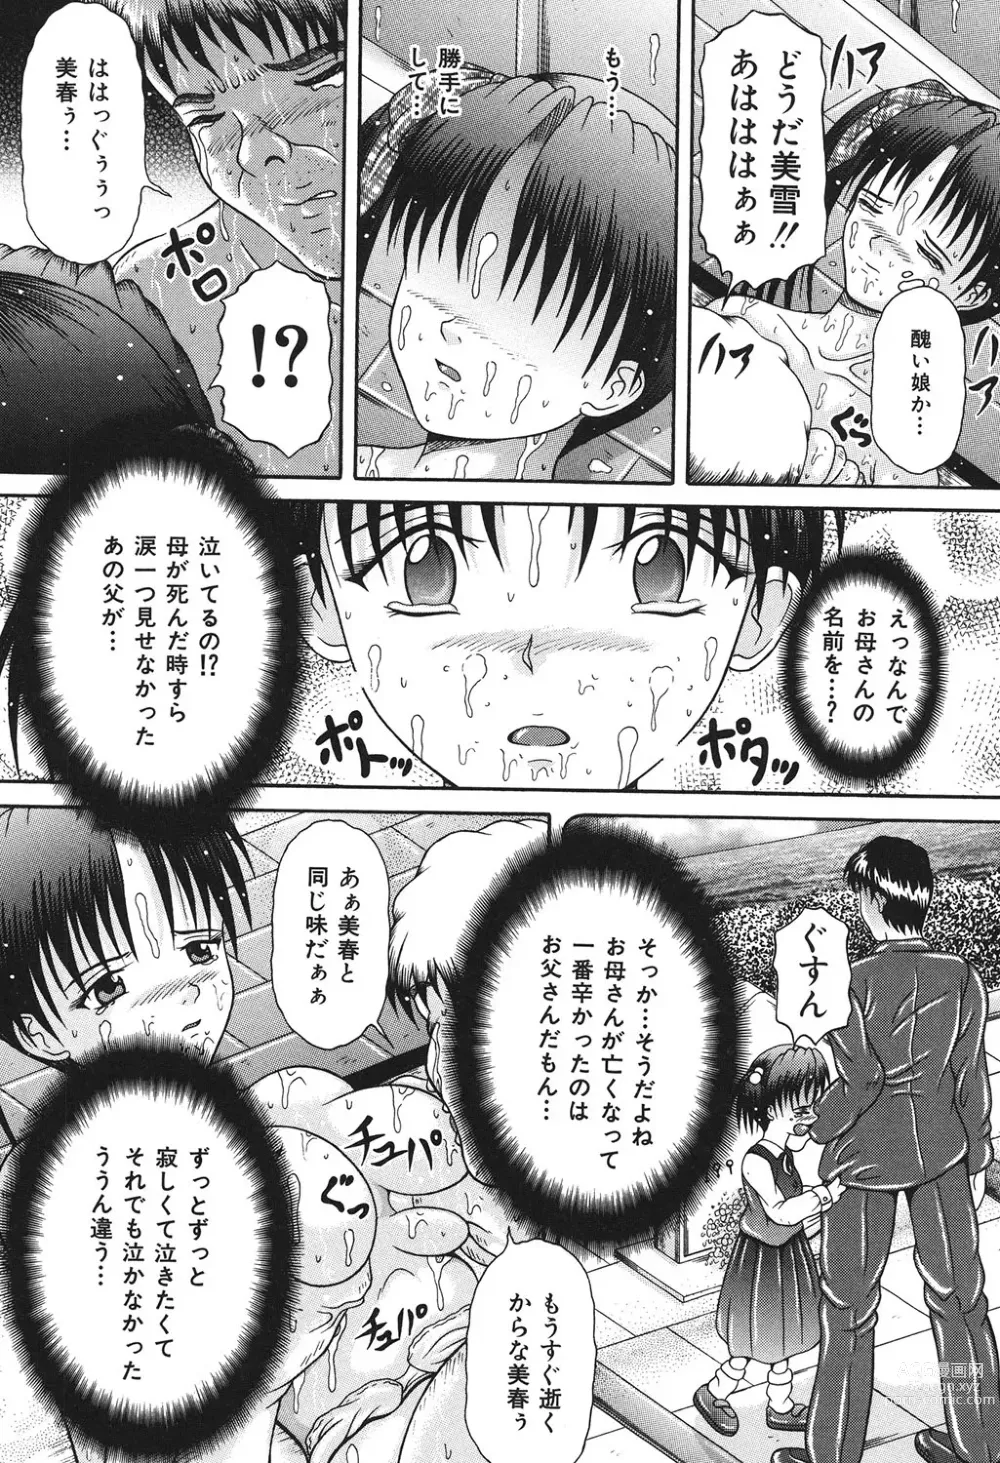 Page 140 of manga Todokanai Zekkyou - Nicht Erreichen Schreien